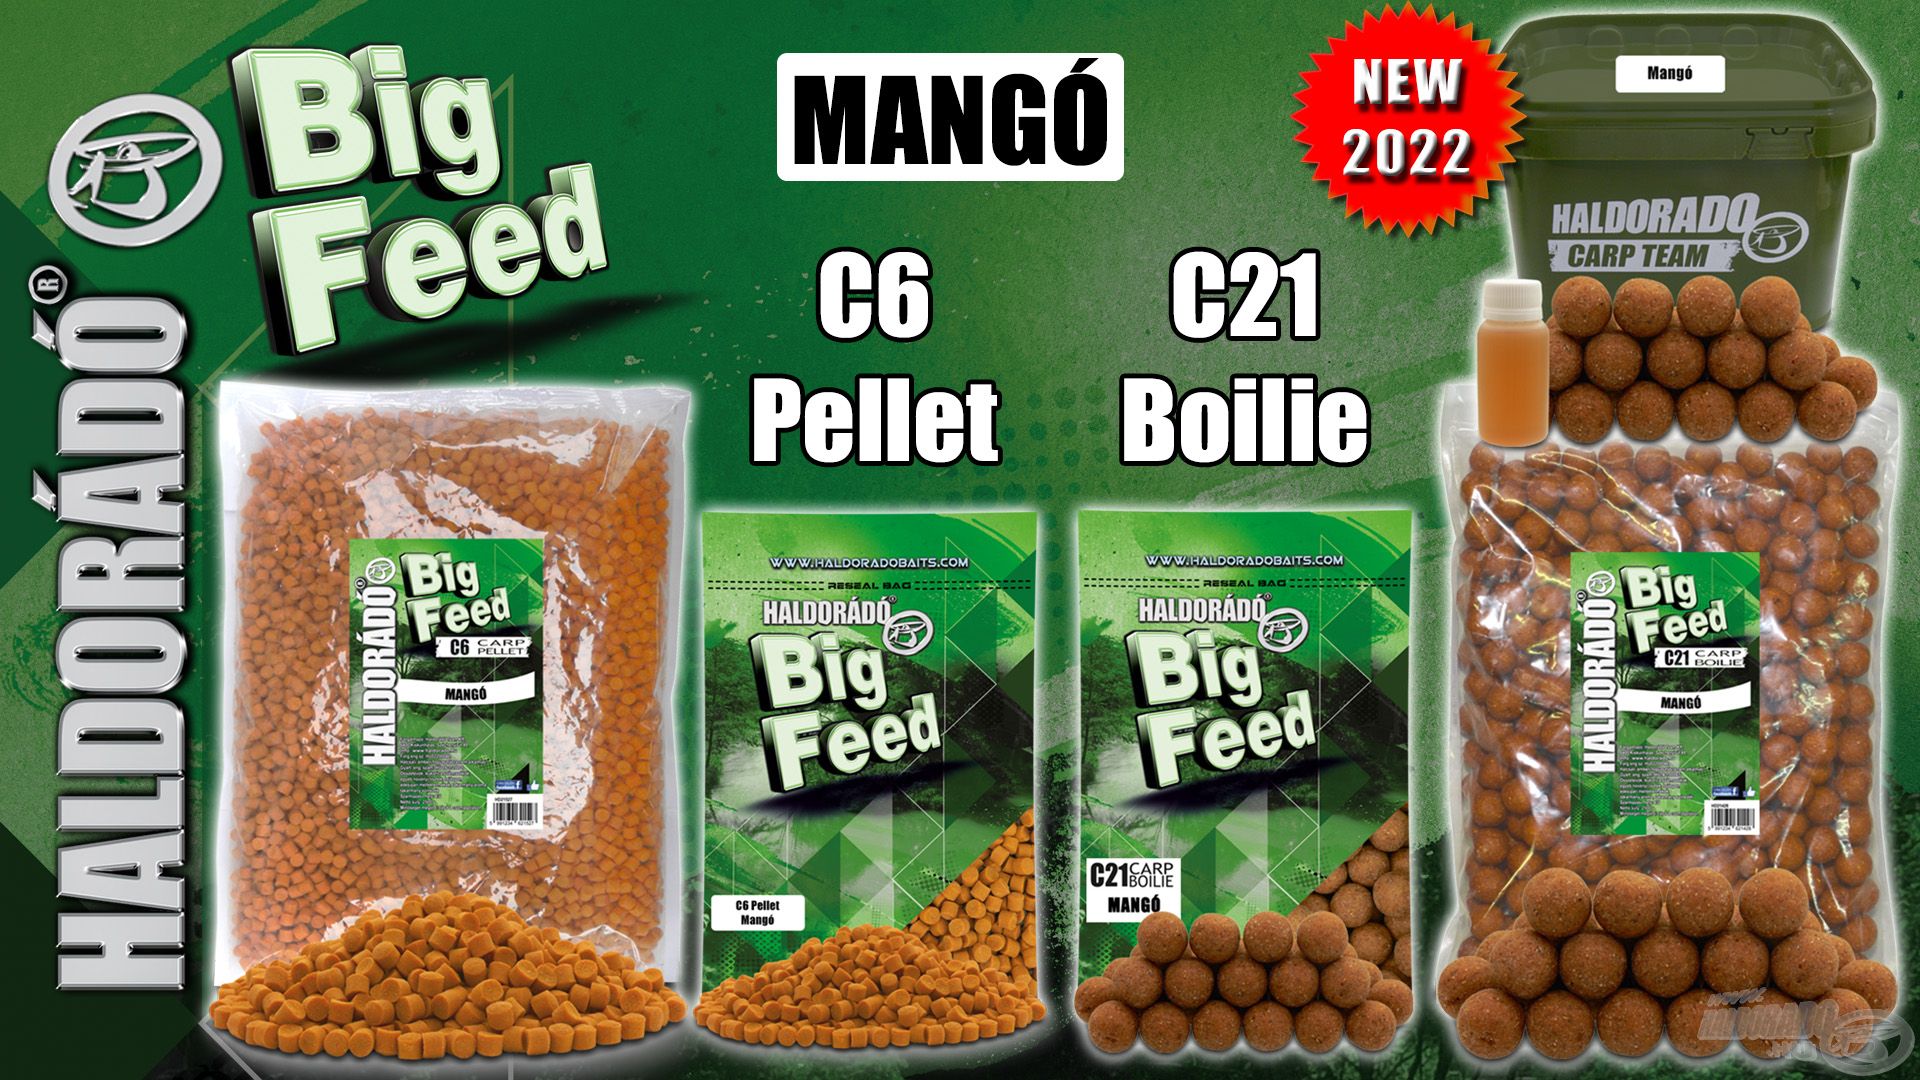 Az új mangó ízváltozat megtalálható Big Feed C6 Pellet formában 800 és 2500 grammos kiszerelésben, és természetesen Big Feed C21 Boilie formában 800, 2500 grammos, valamint vödrös változatban is